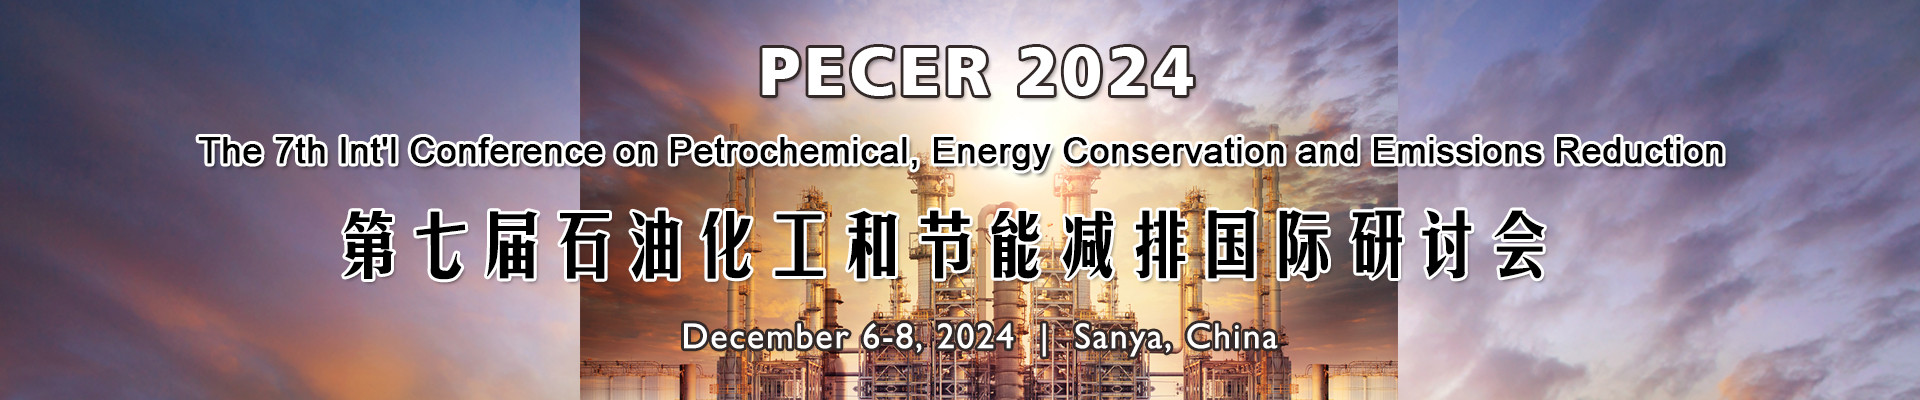 第七届石油化工和节能减排国际研讨会(PECER 2024)